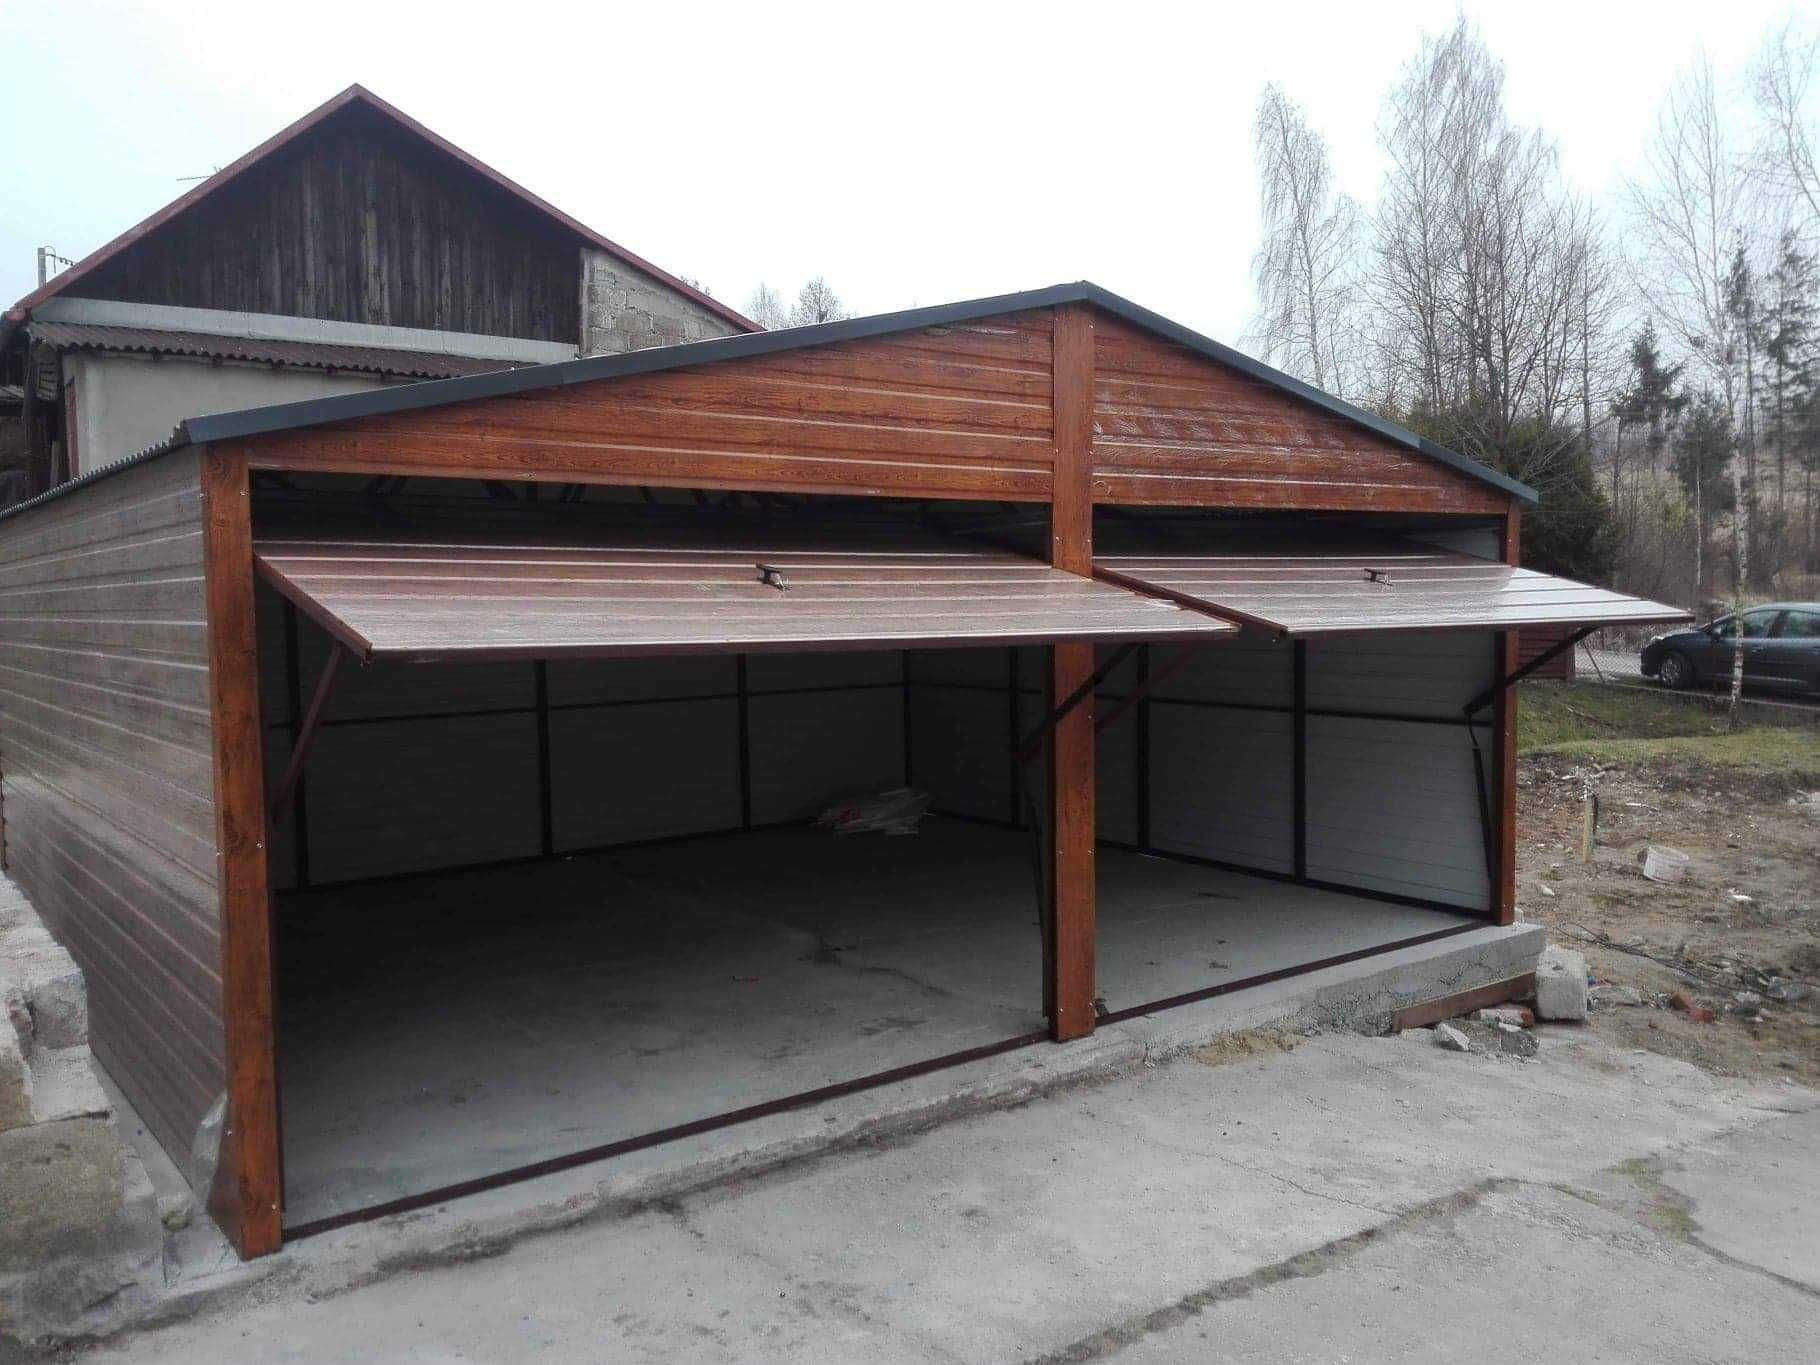 Garaż blaszany 3x5,4x6,6x5,złoty dąb, imitacja drewna,producent garaży